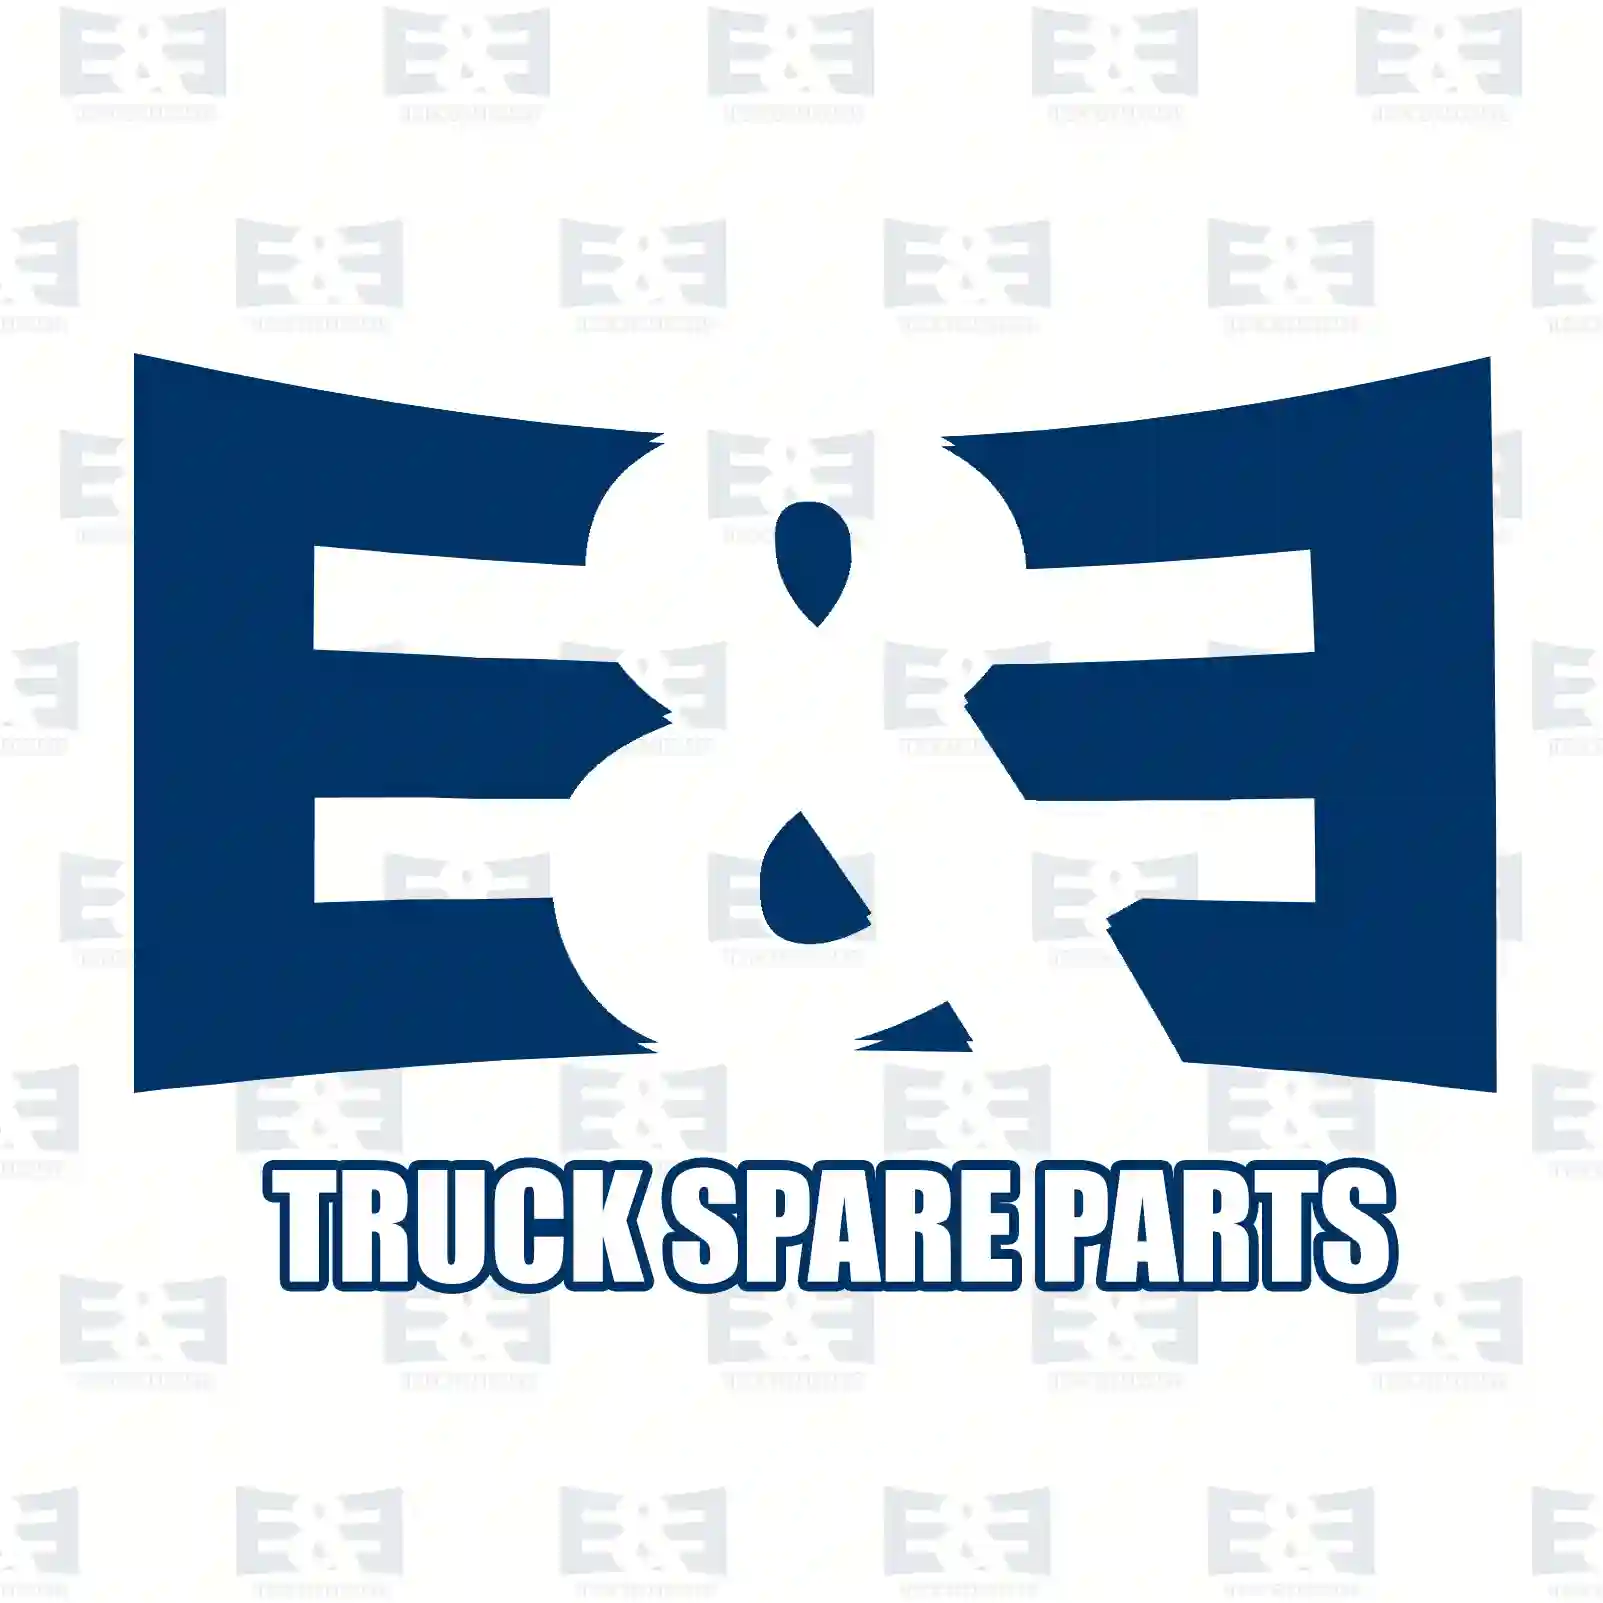 Service kit, 2E2206321, 1117285S1, 1372444S, 8159975S ||  2E2206321 E&E Truck Spare Parts | Truck Spare Parts, Auotomotive Spare Parts Service kit, 2E2206321, 1117285S1, 1372444S, 8159975S ||  2E2206321 E&E Truck Spare Parts | Truck Spare Parts, Auotomotive Spare Parts